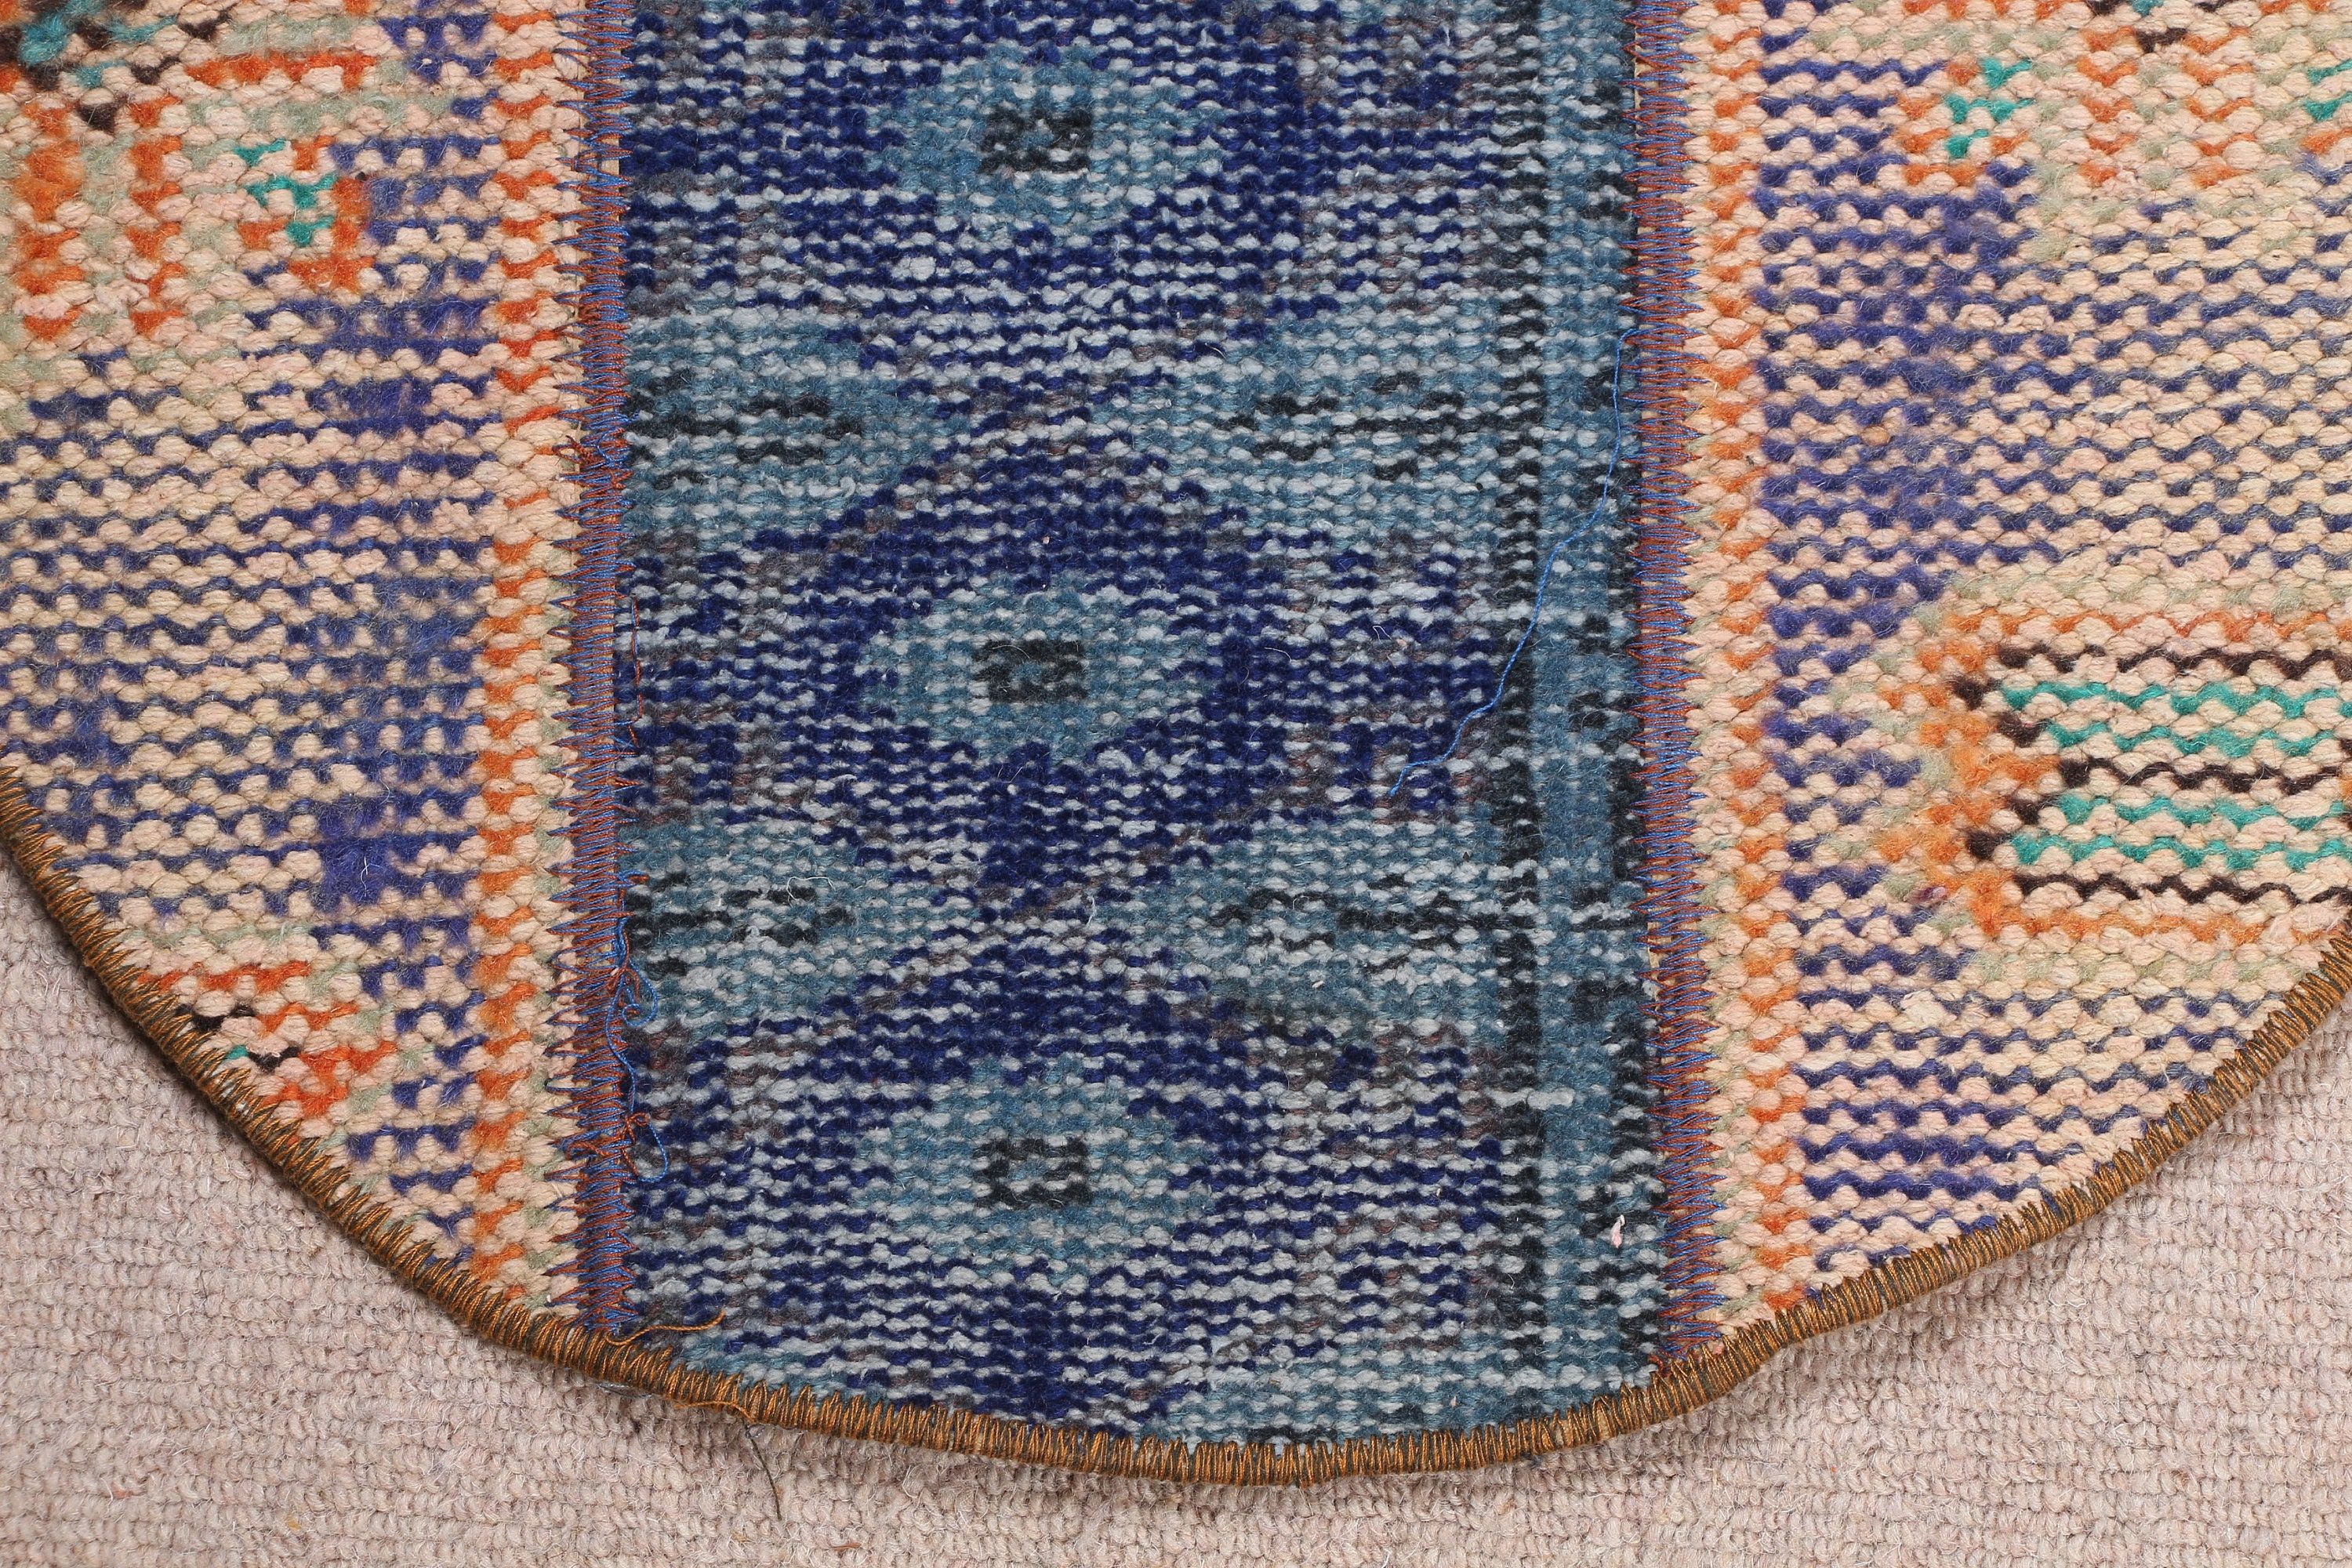 Moroccan Rug, Rugs for Nursery, 1.7x1.7 ft Small Rug, Entry Rugs, Turkish Rug, Vintage Rug, Floor Rug, Blue Oushak Rugs, Bedroom Rugs